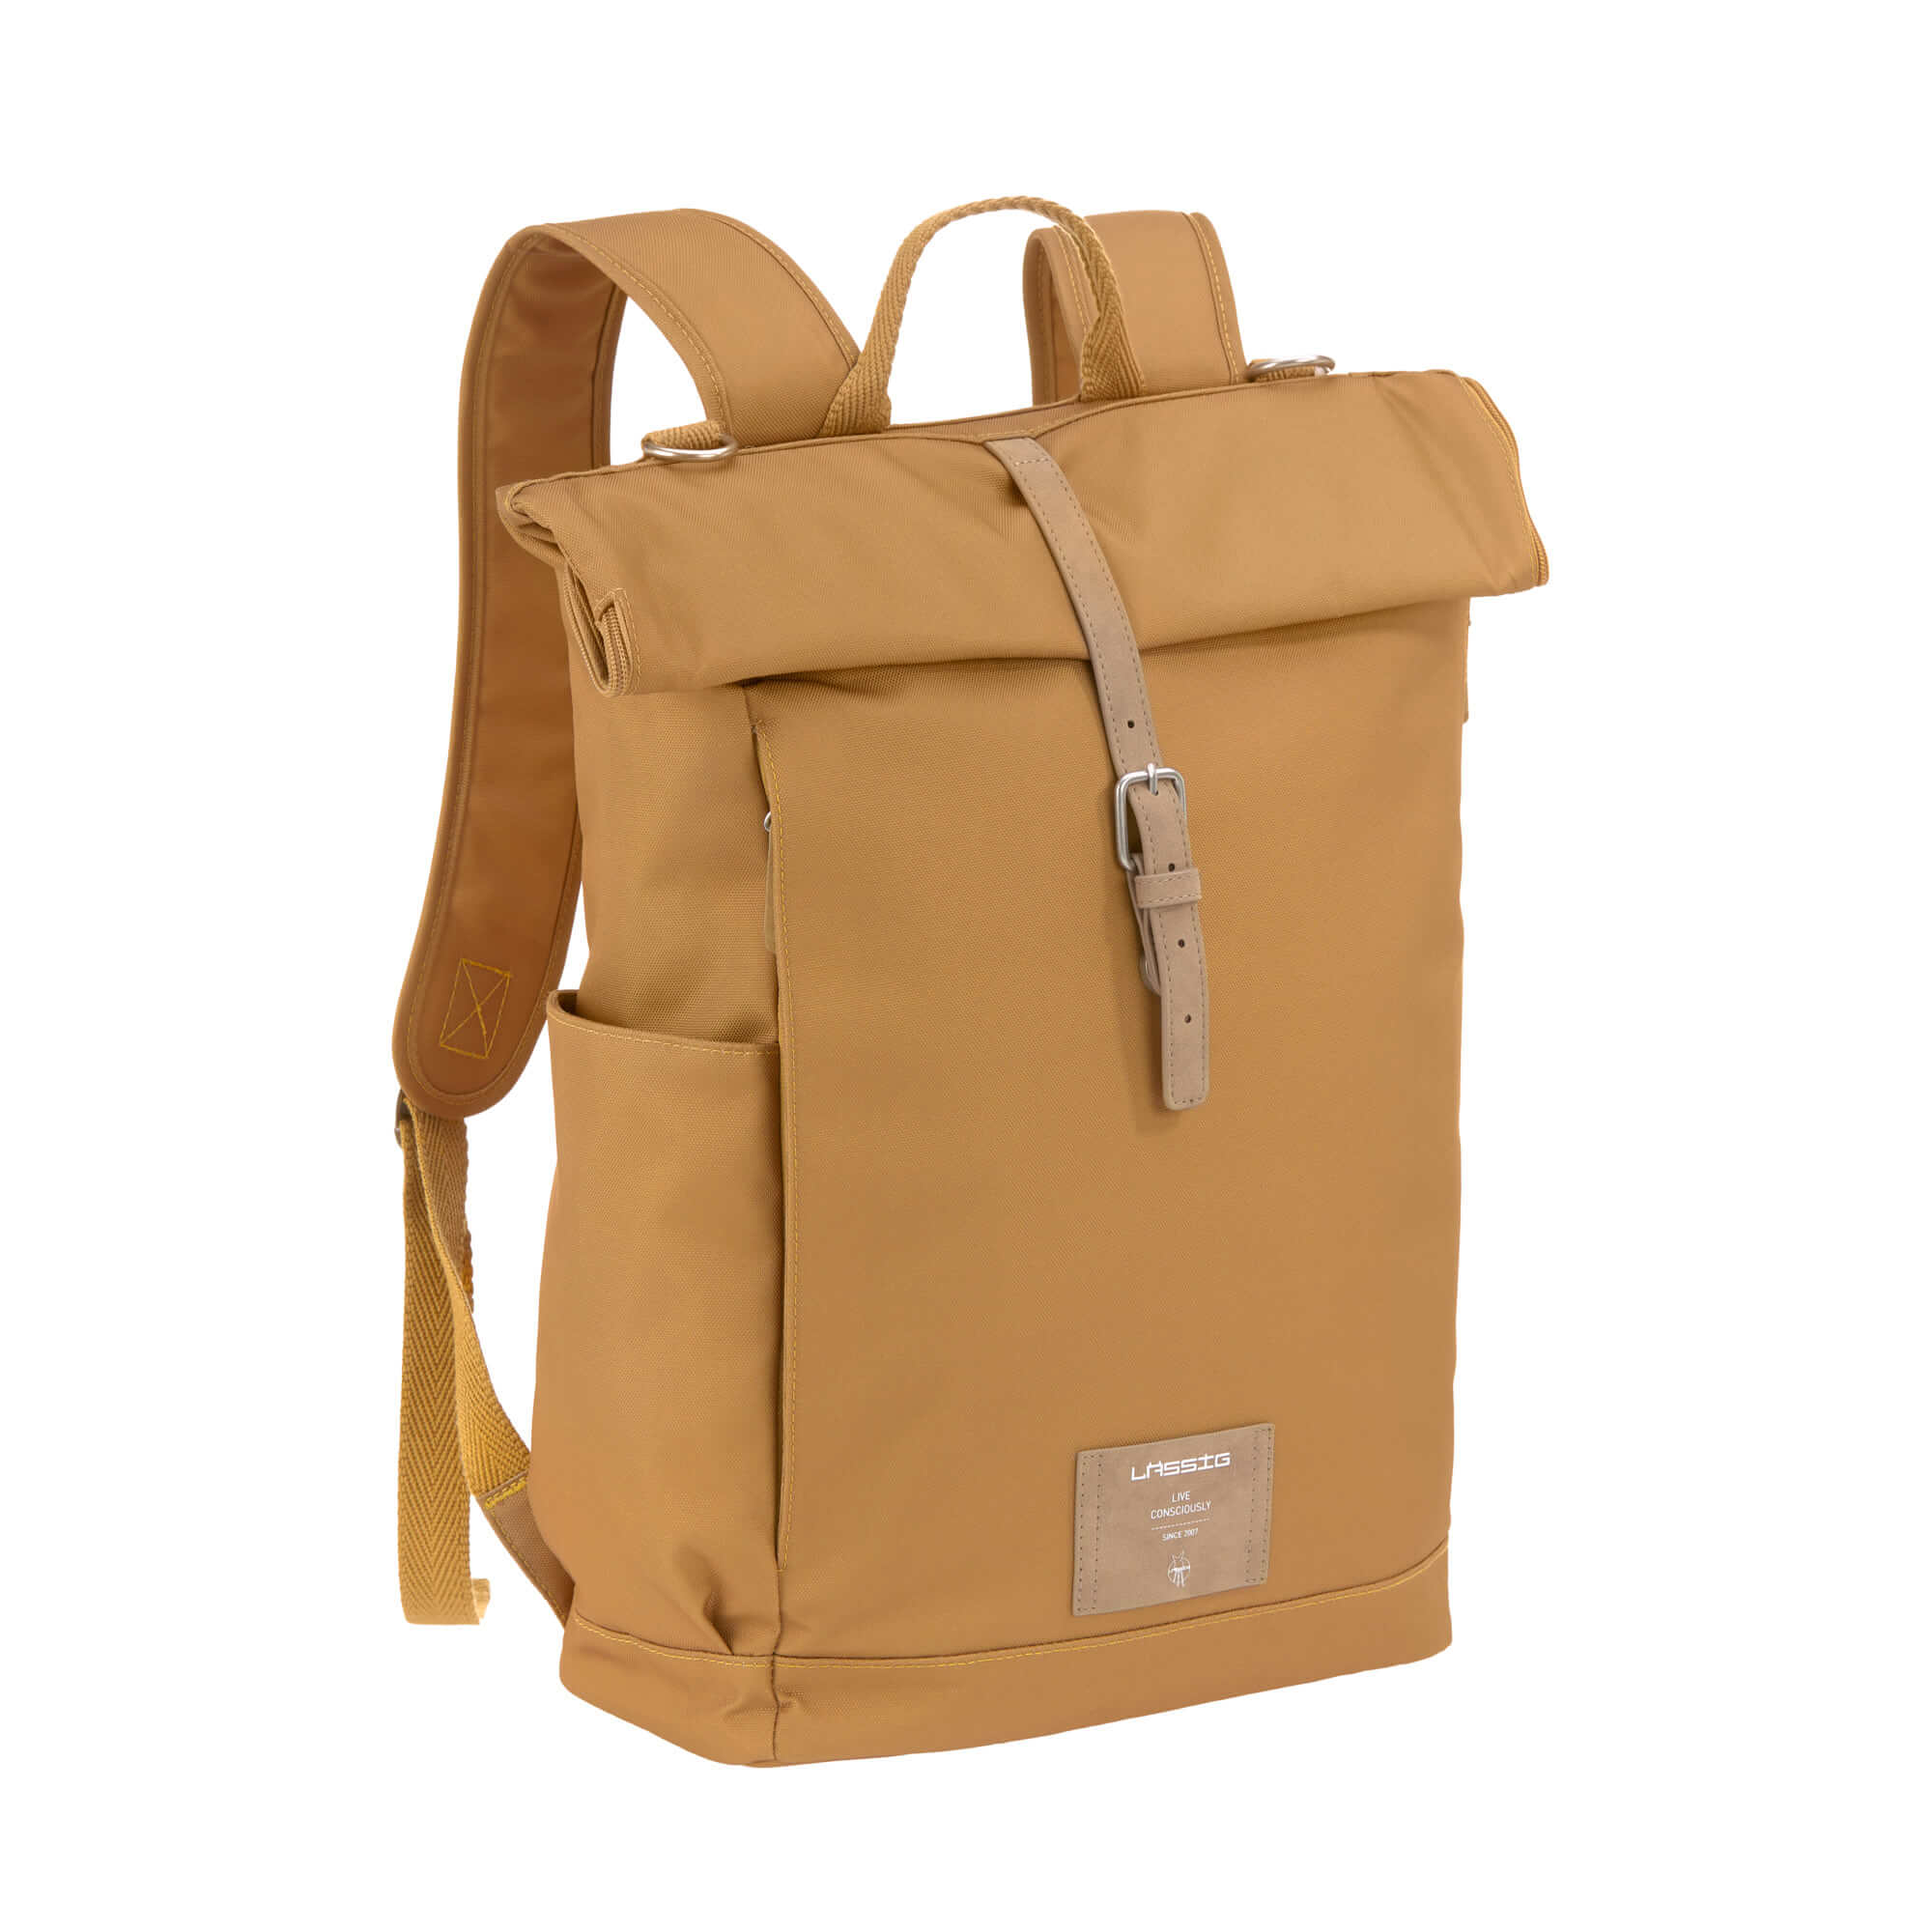 Interactie stijfheid dubbele Order the Lässig Rolltop Diaper Backpack online - Baby Plus